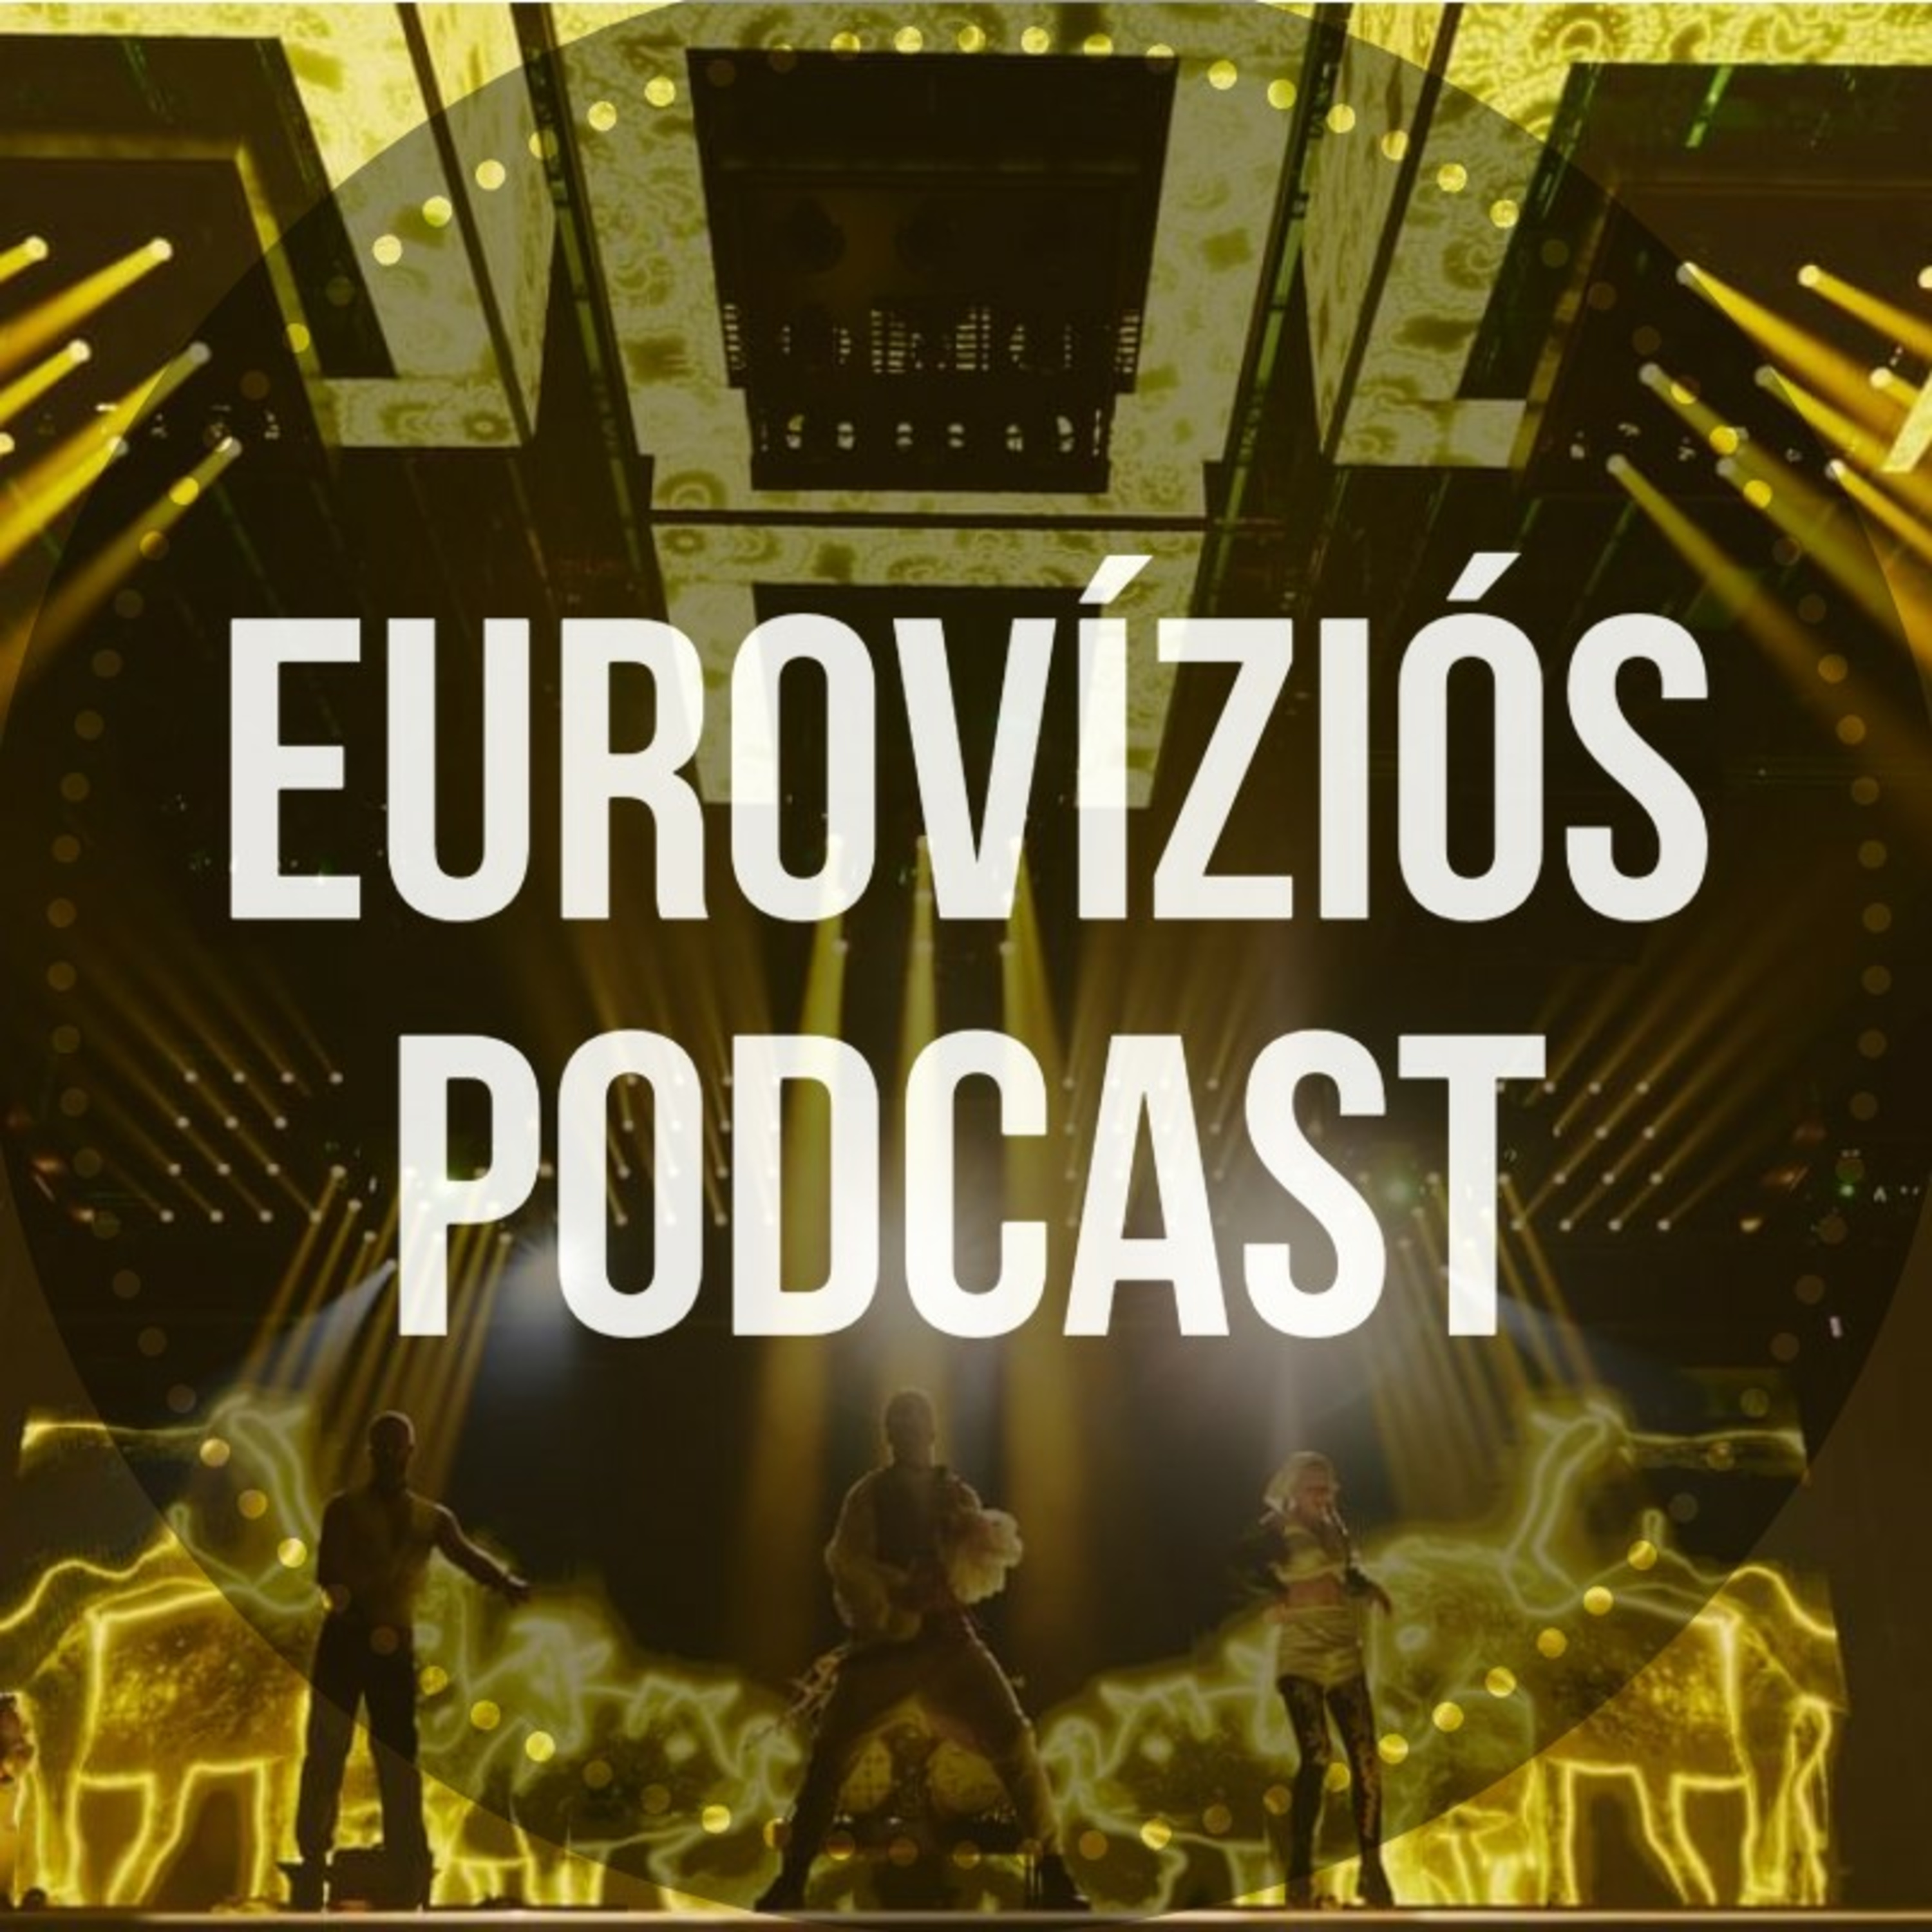 Eurovíziós Podcast - 14. rész - Ki lesz az Eurovízió győztese idén? - Lőrincz Álmos